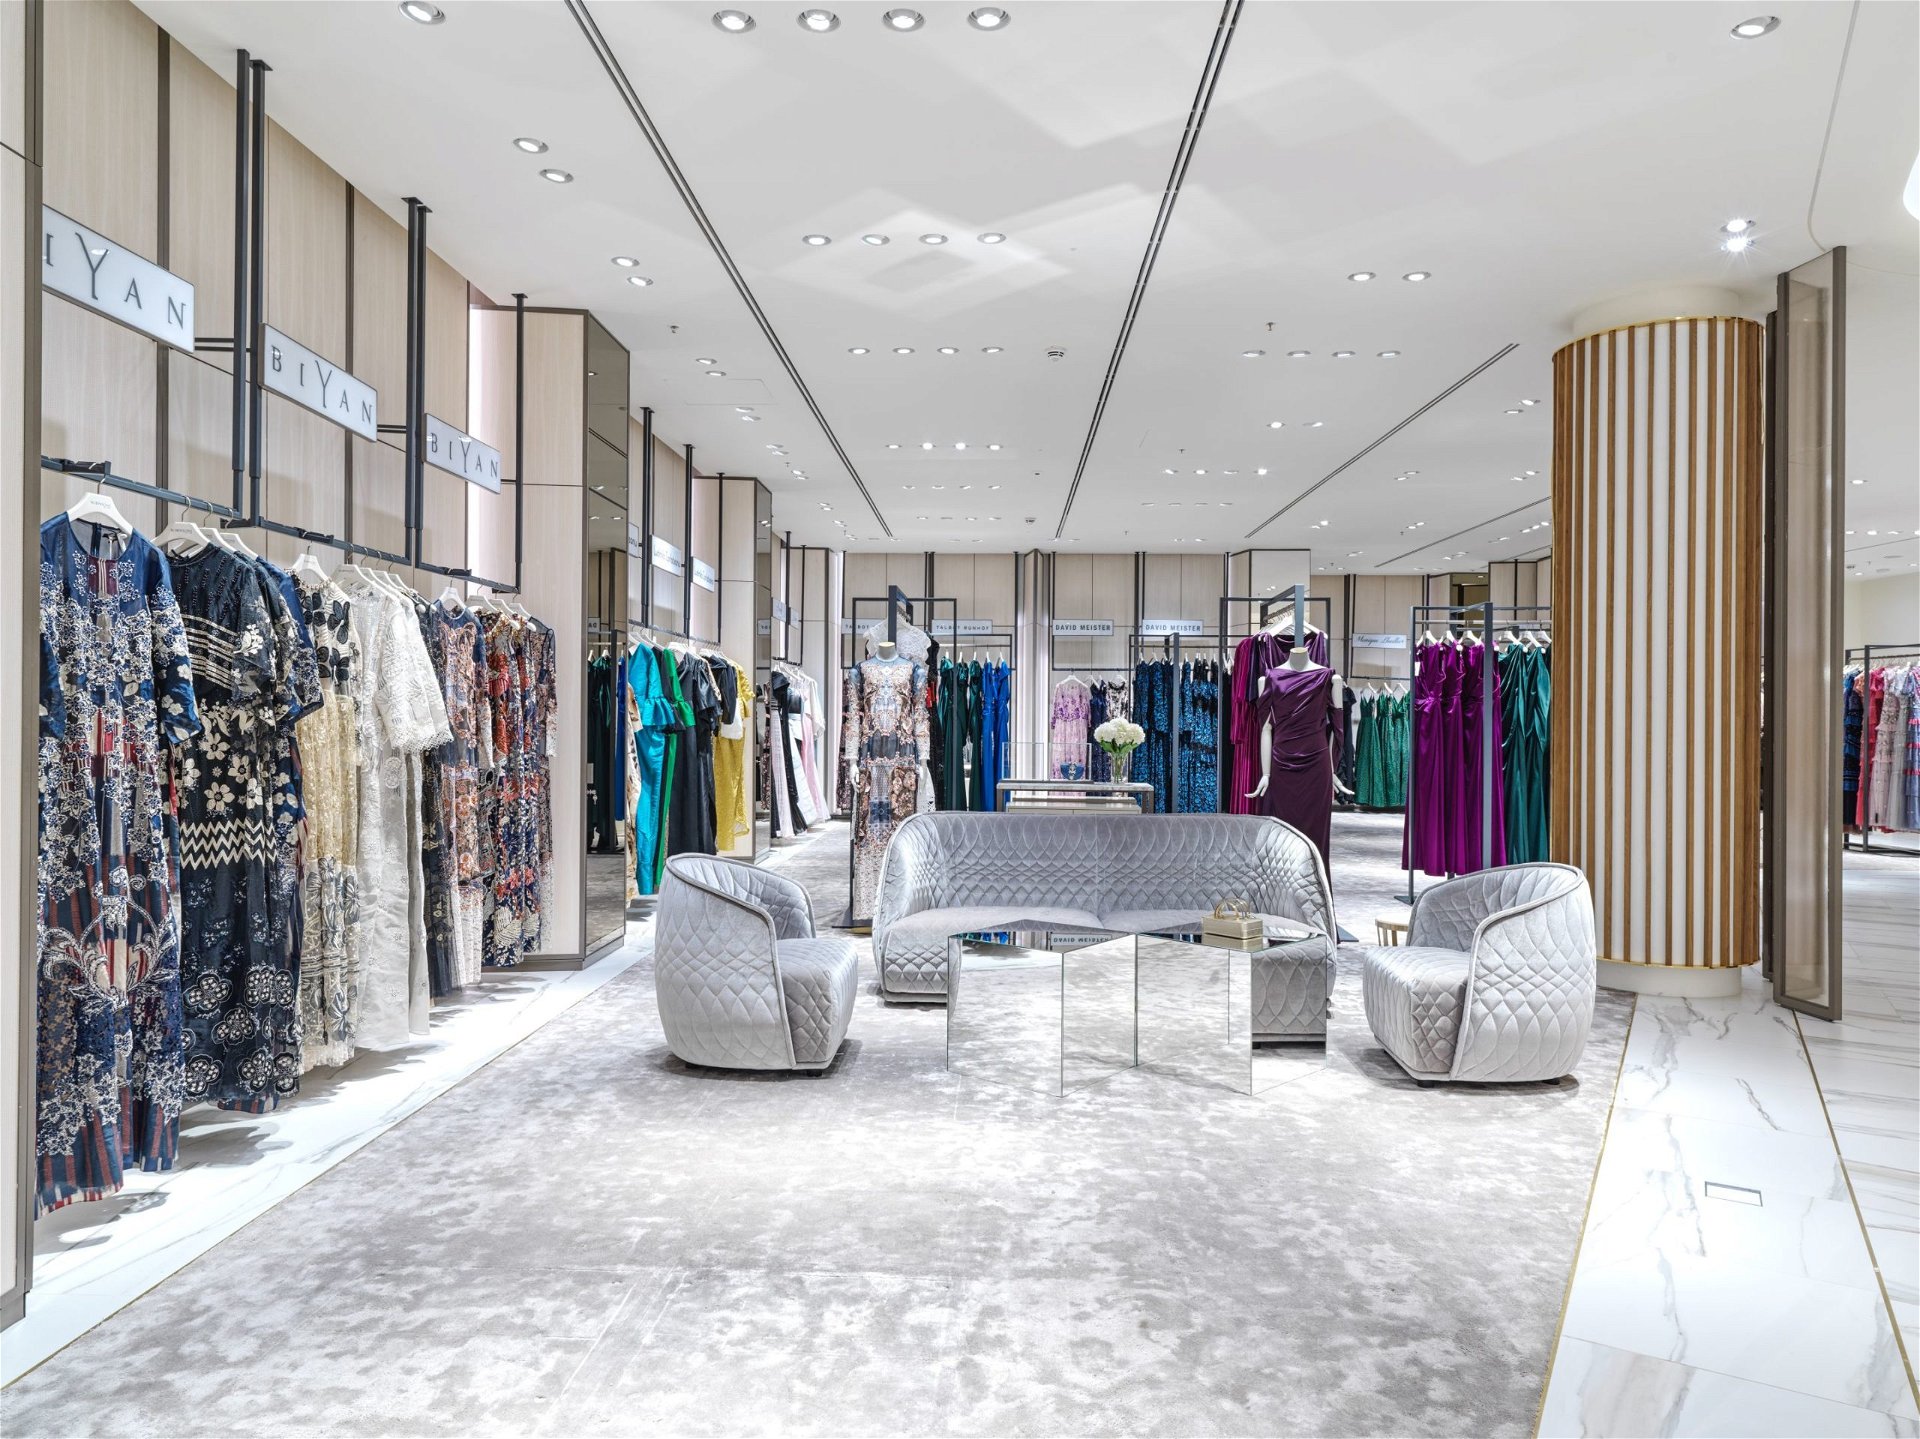 Robinsons Department Stores, Dubai - Department Store Interior Design ...